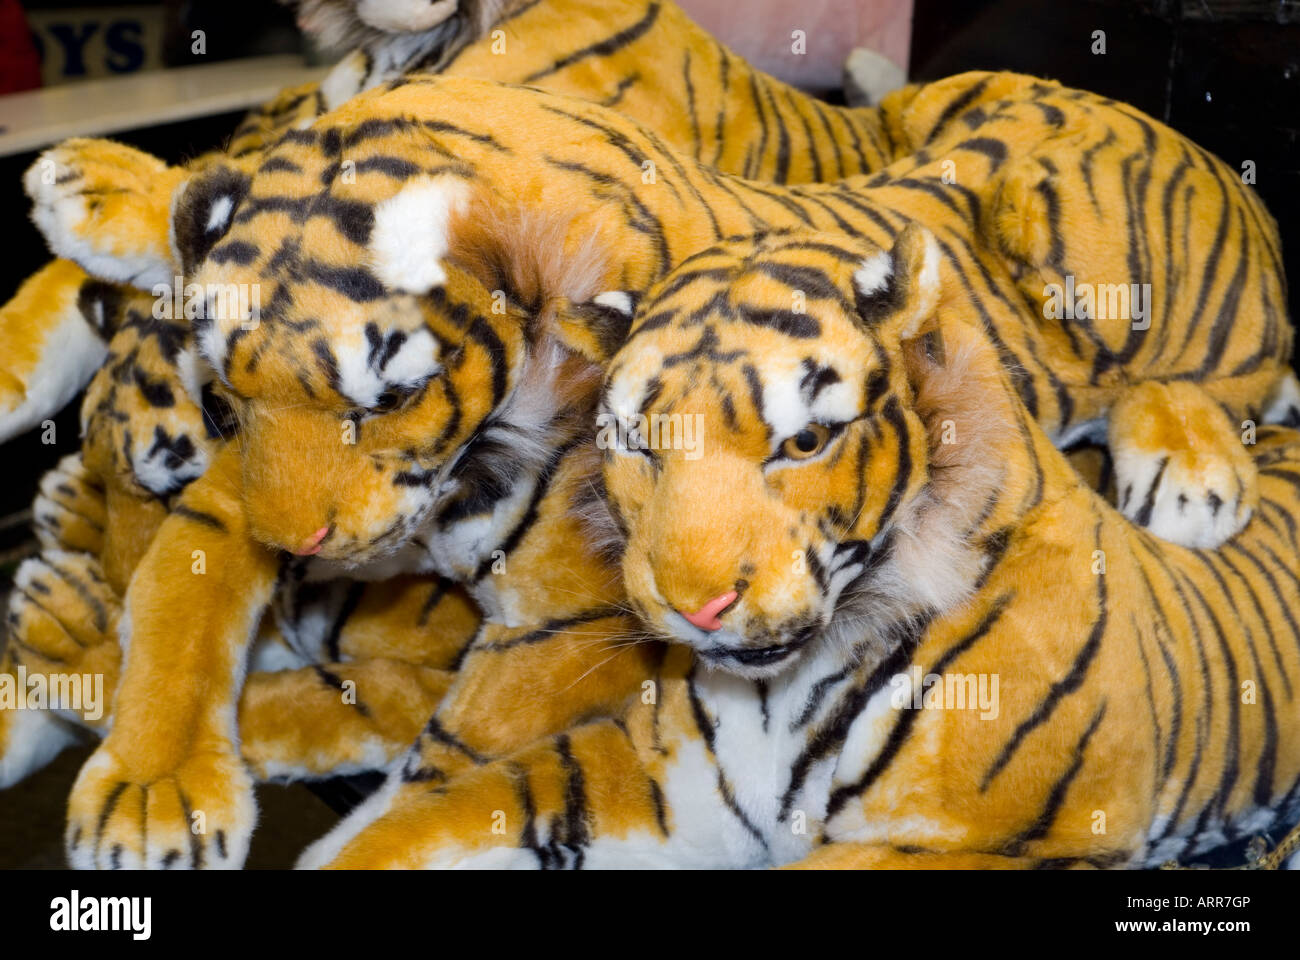 Stuffed toy tigers animals in a fun fair Stock Photo